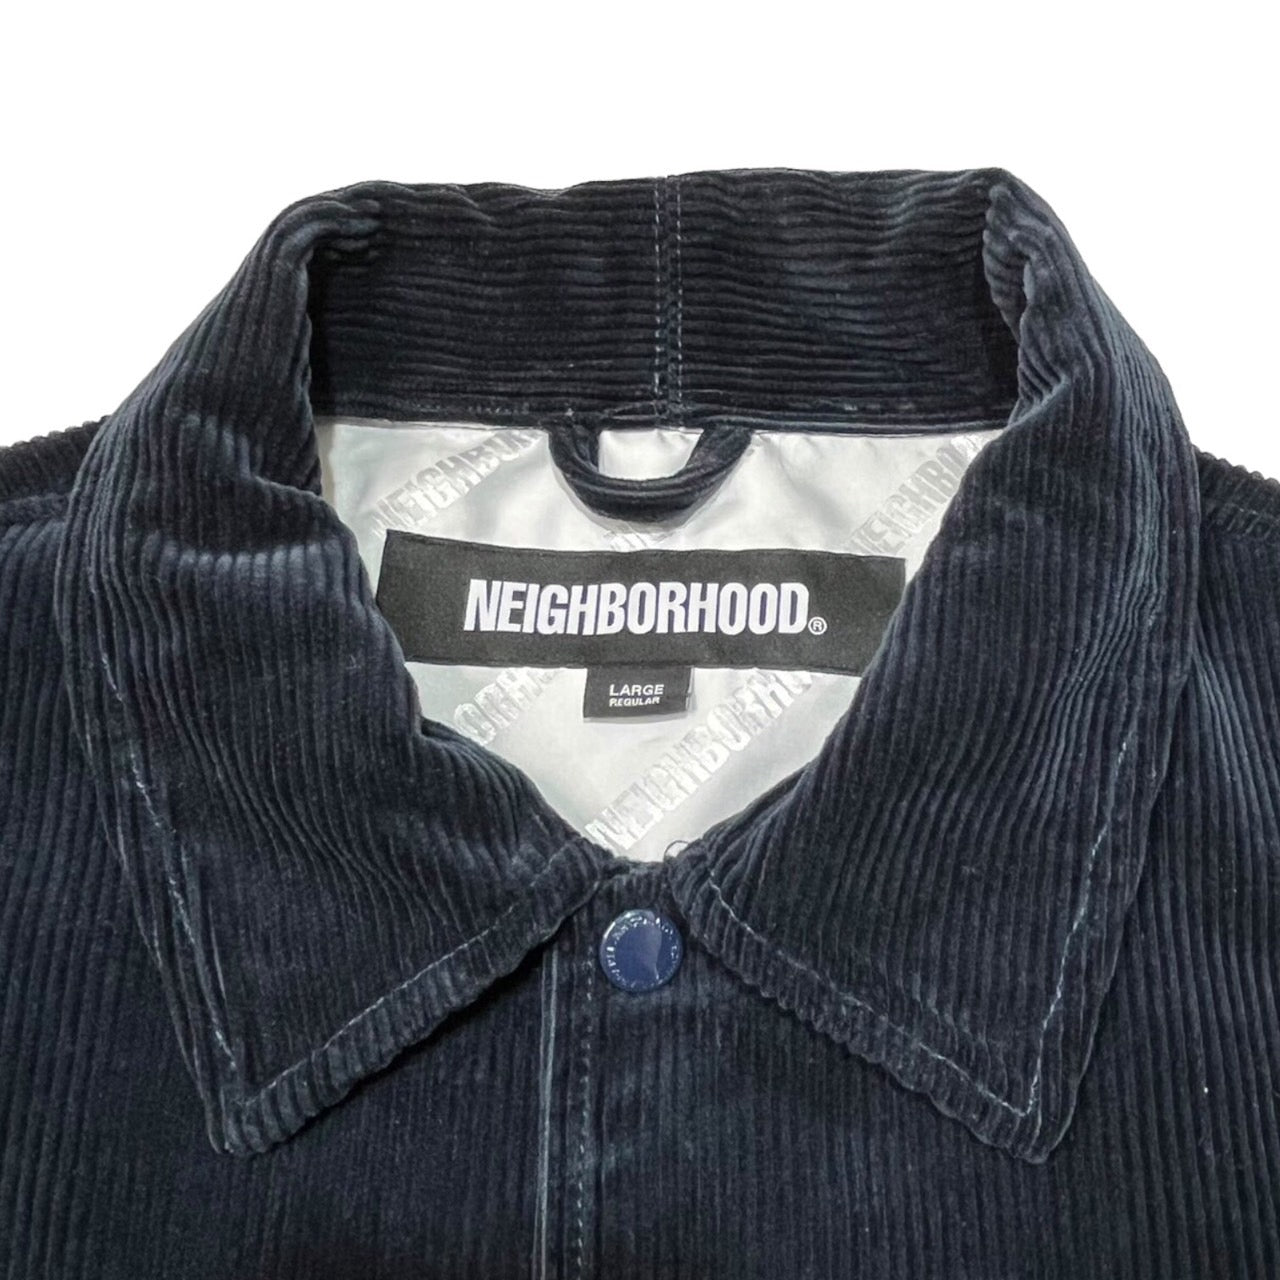 ネイバーフッド neighborhood 22AW コーデュロイジャケット袖丈58 